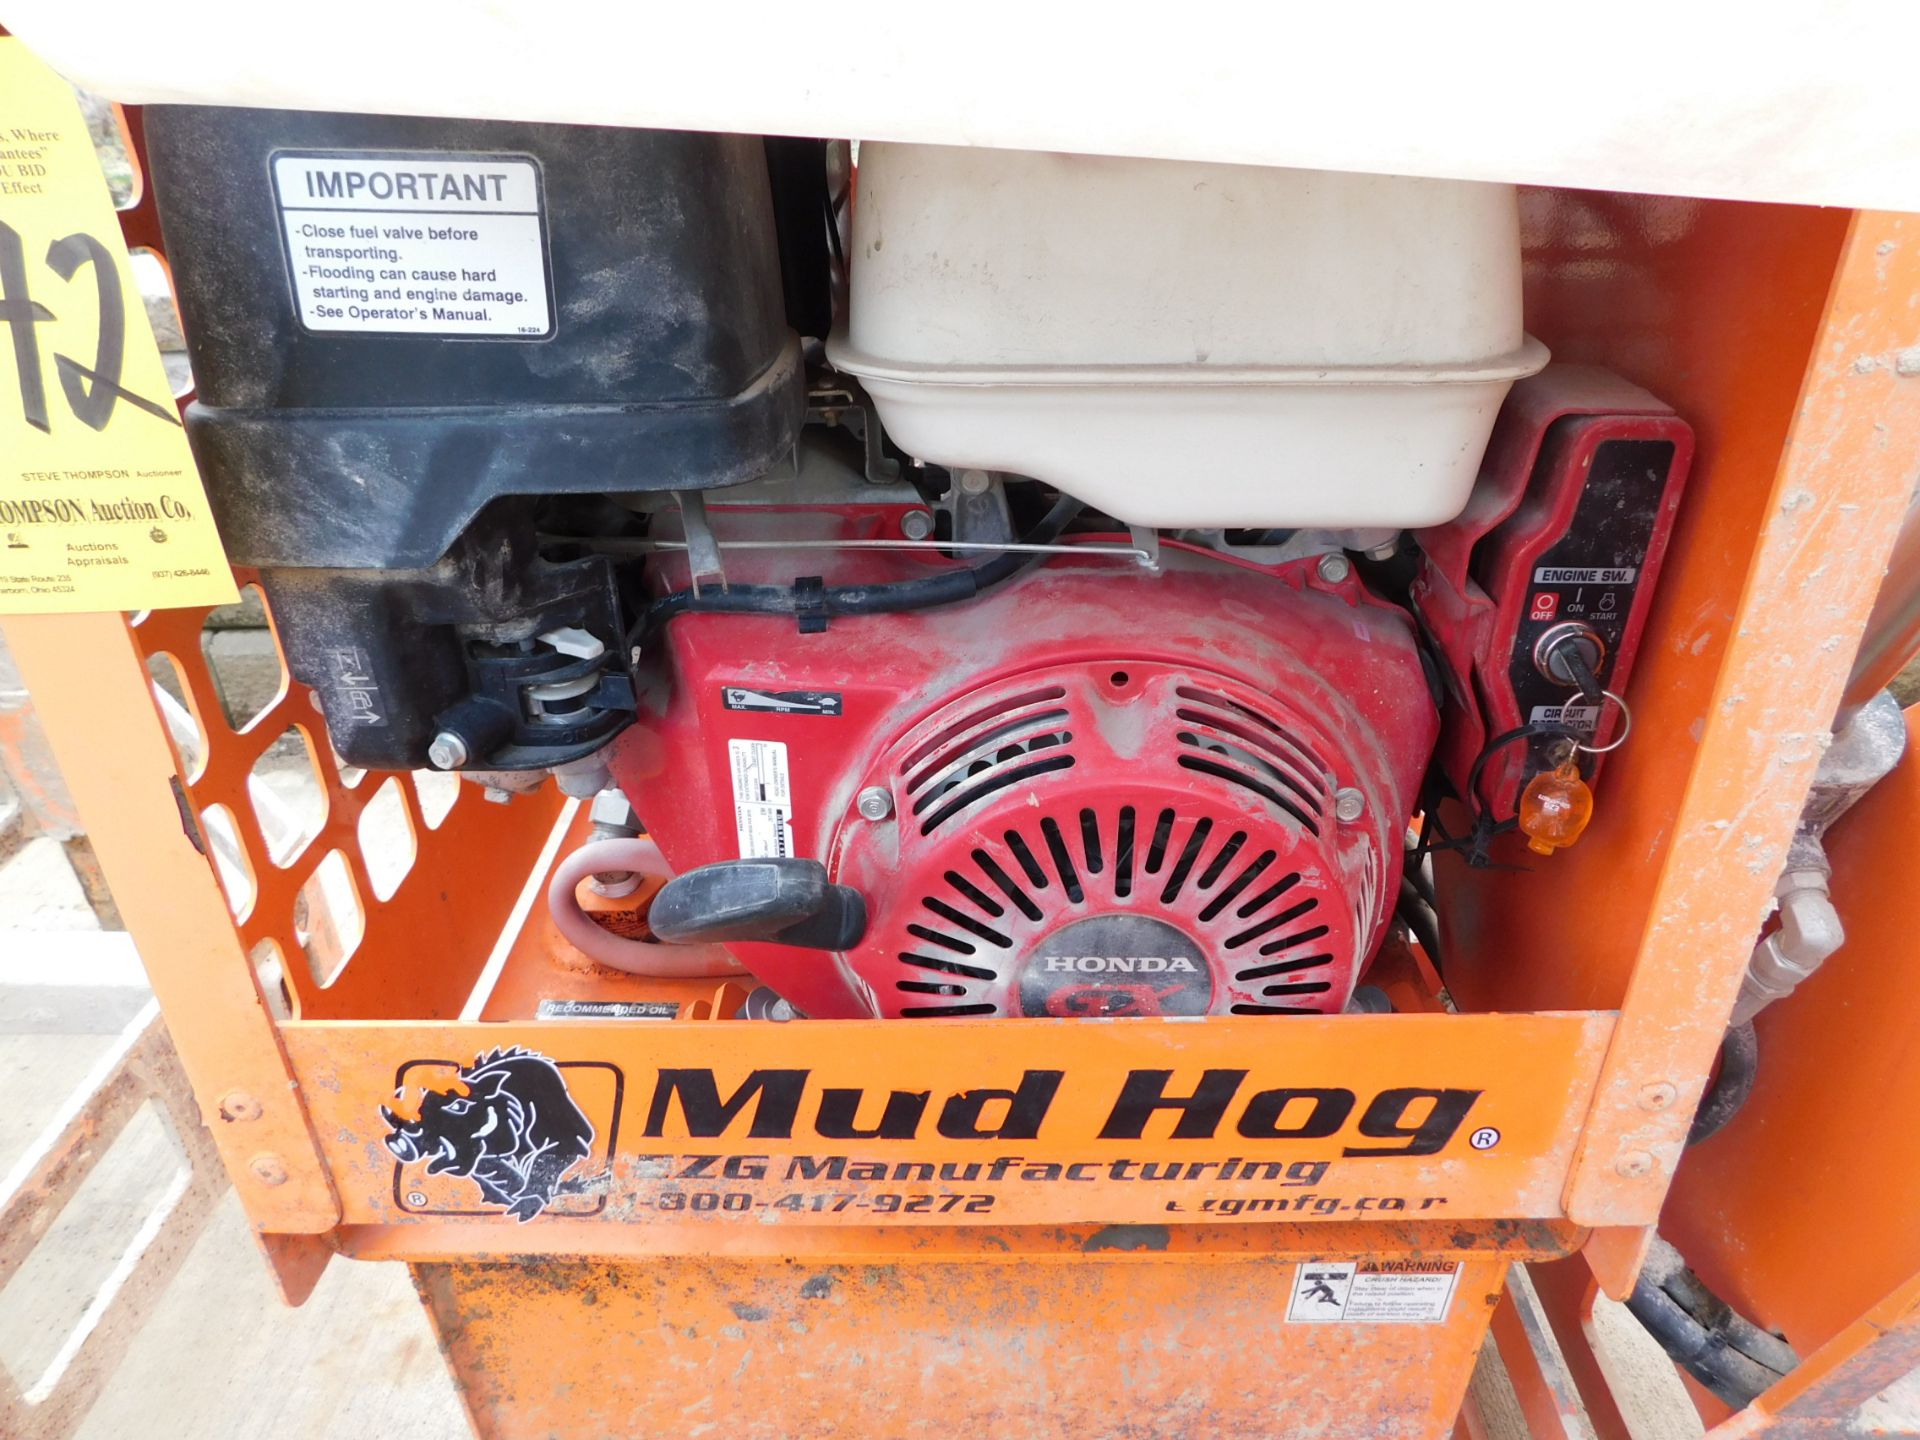 EZG MH-12 Mud Hog Mixer, 12 Cubic Feet, Hydraulic Dump, Honda GX390 Gas Engine, Electric Start, s/ - Image 4 of 6